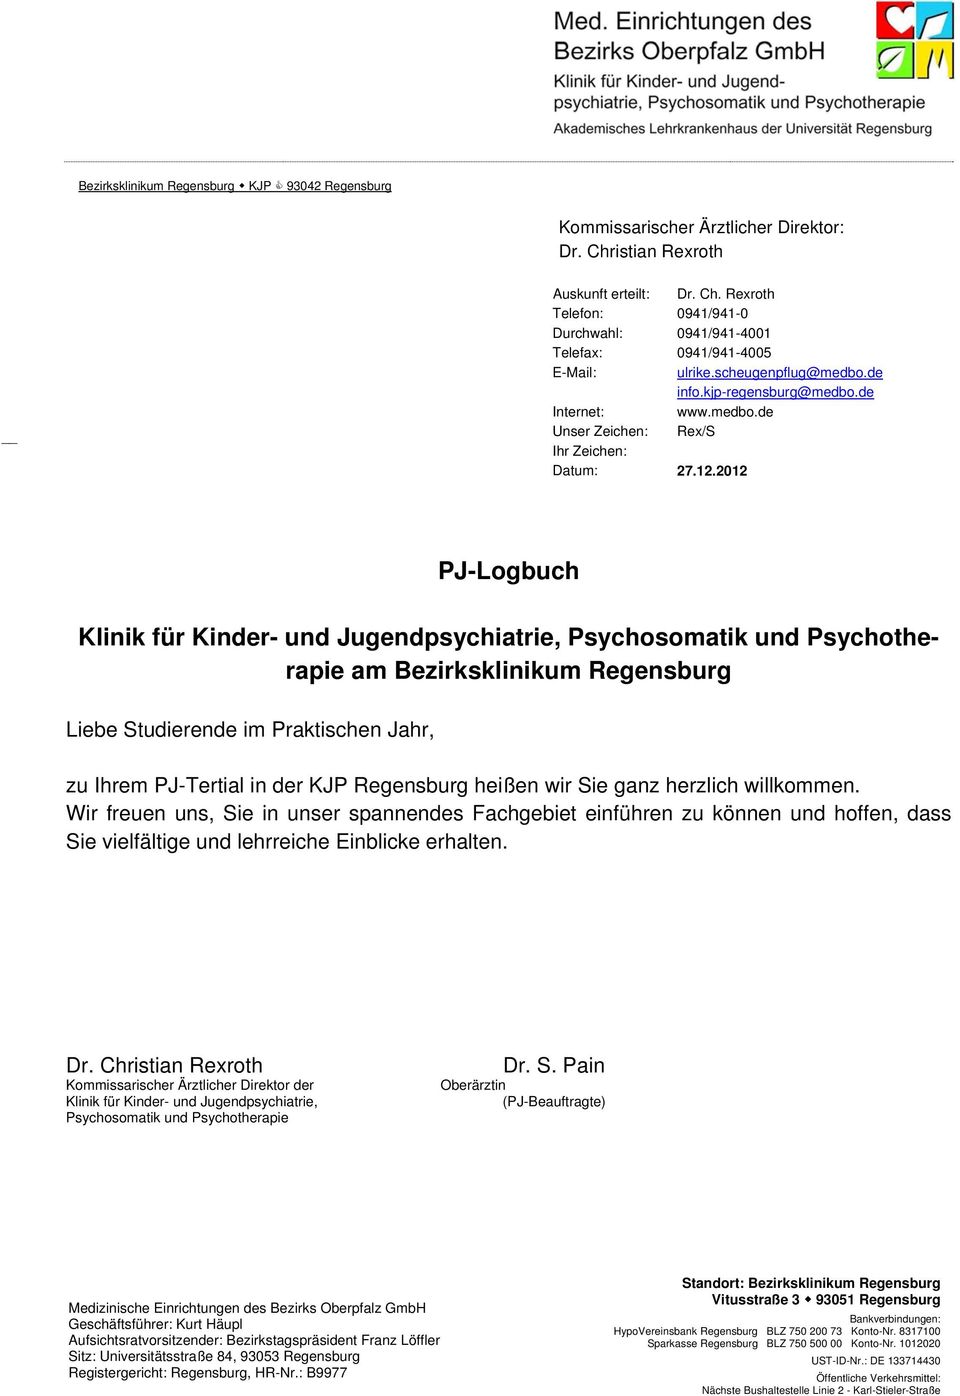 2012 PJ-Logbuch Klinik für Kinder- und Jugendpsychiatrie, Psychosomatik und Psychotherapie am Bezirksklinikum Regensburg Liebe Studierende im Praktischen Jahr, zu Ihrem PJ-Tertial in der KJP